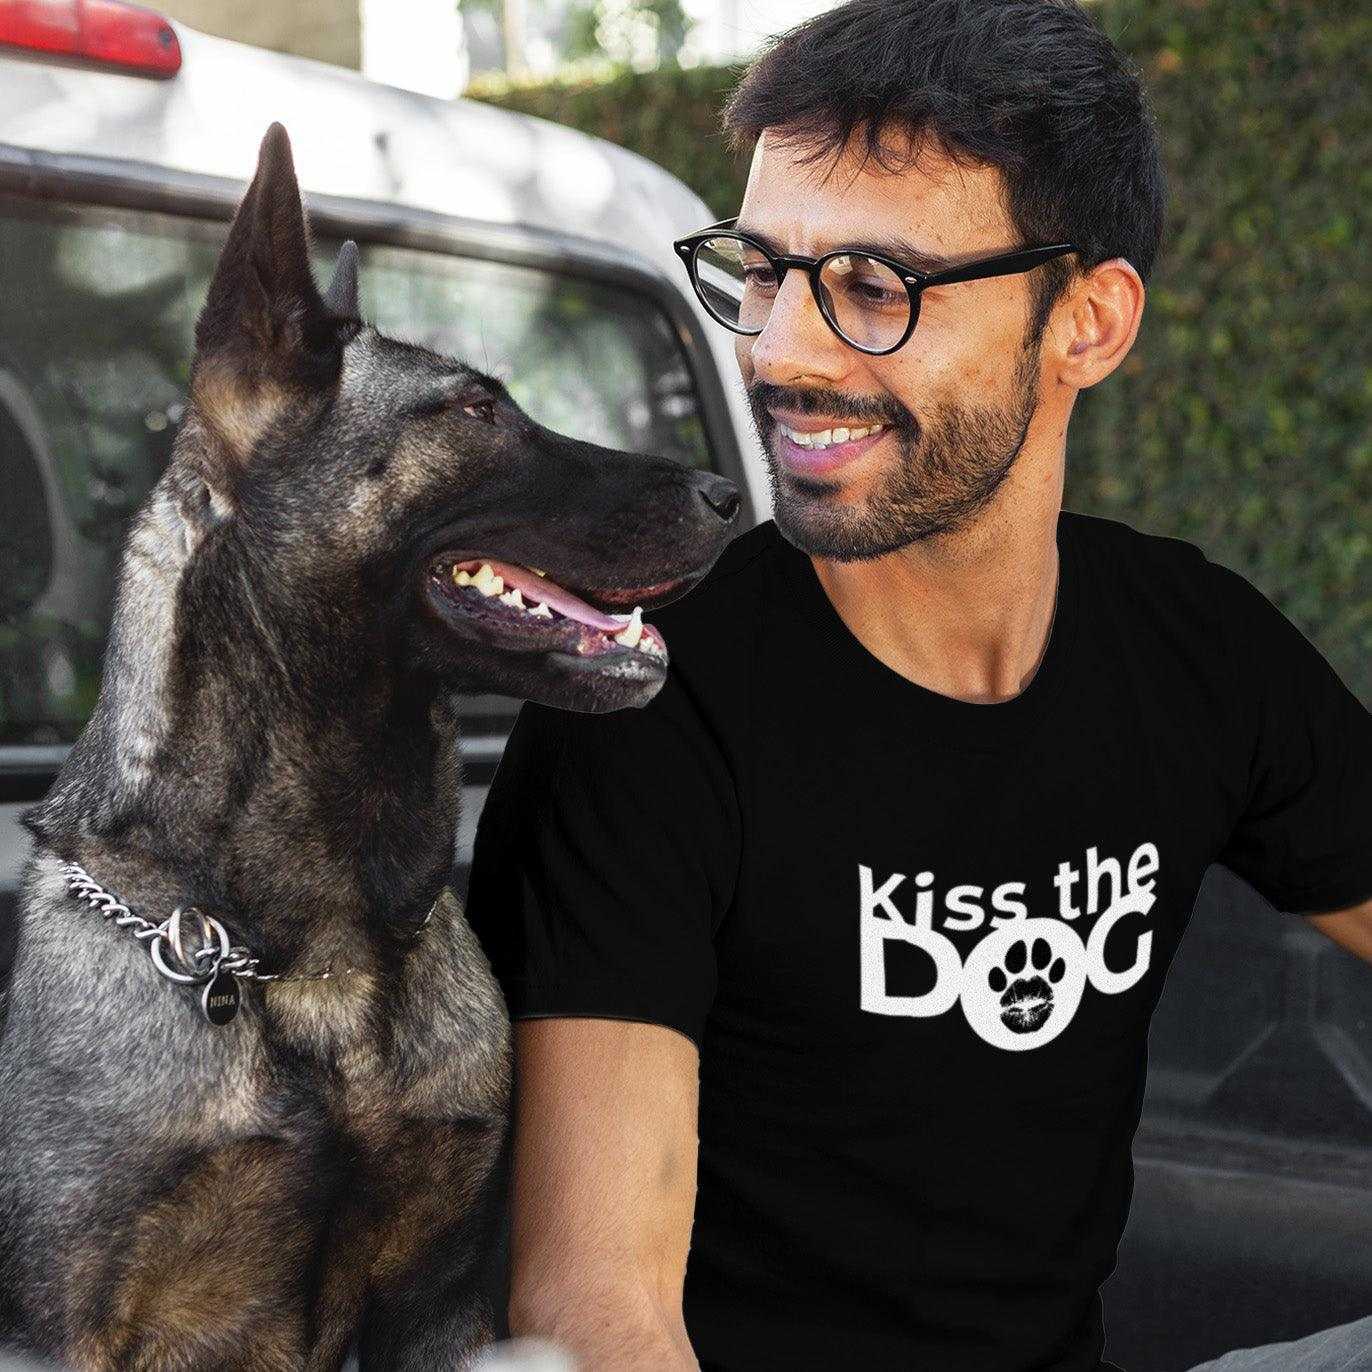 T-Shirt - "Kiss the Dog" Kussmund im "O" ohne Kralle